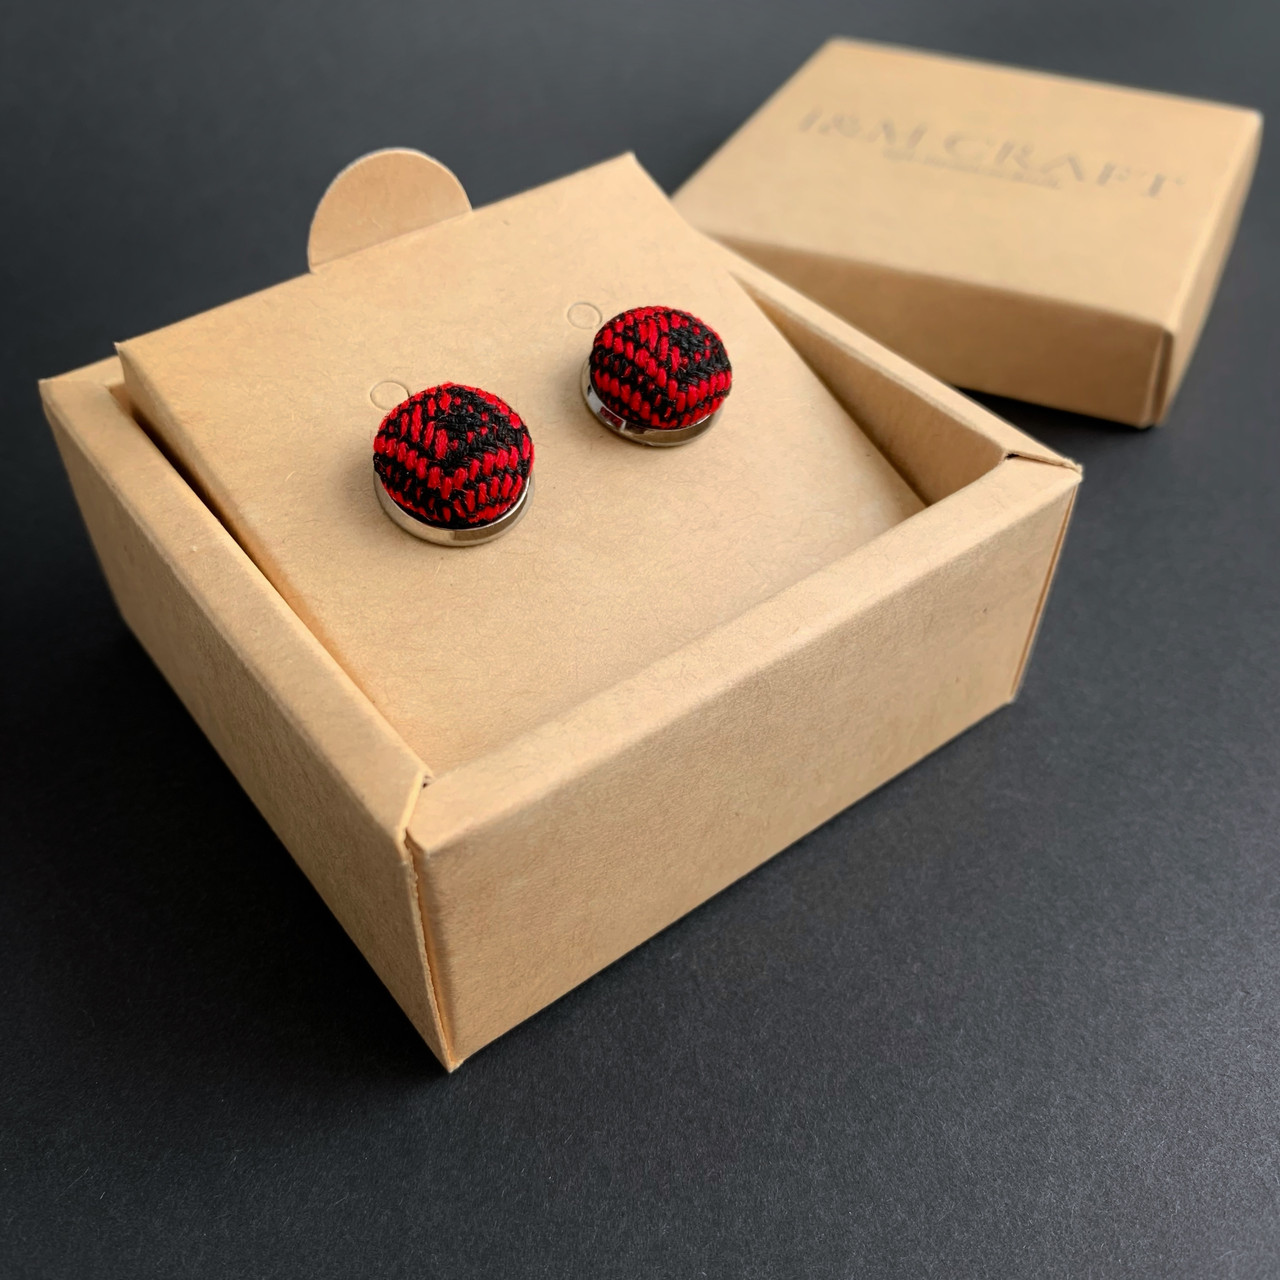 Запонки I&M Craft c Українською вишивкою, чорні з червоним (500147UK)